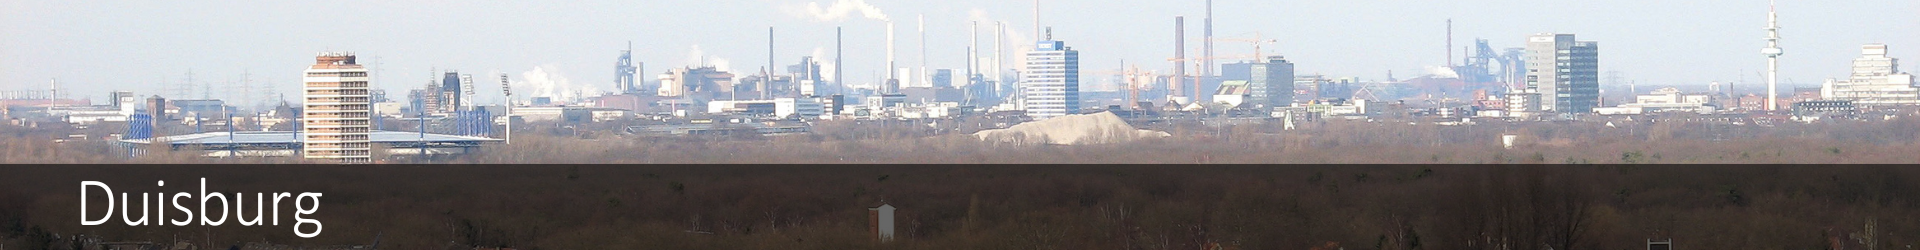 Alles über die Wasserqualität in Duisburg